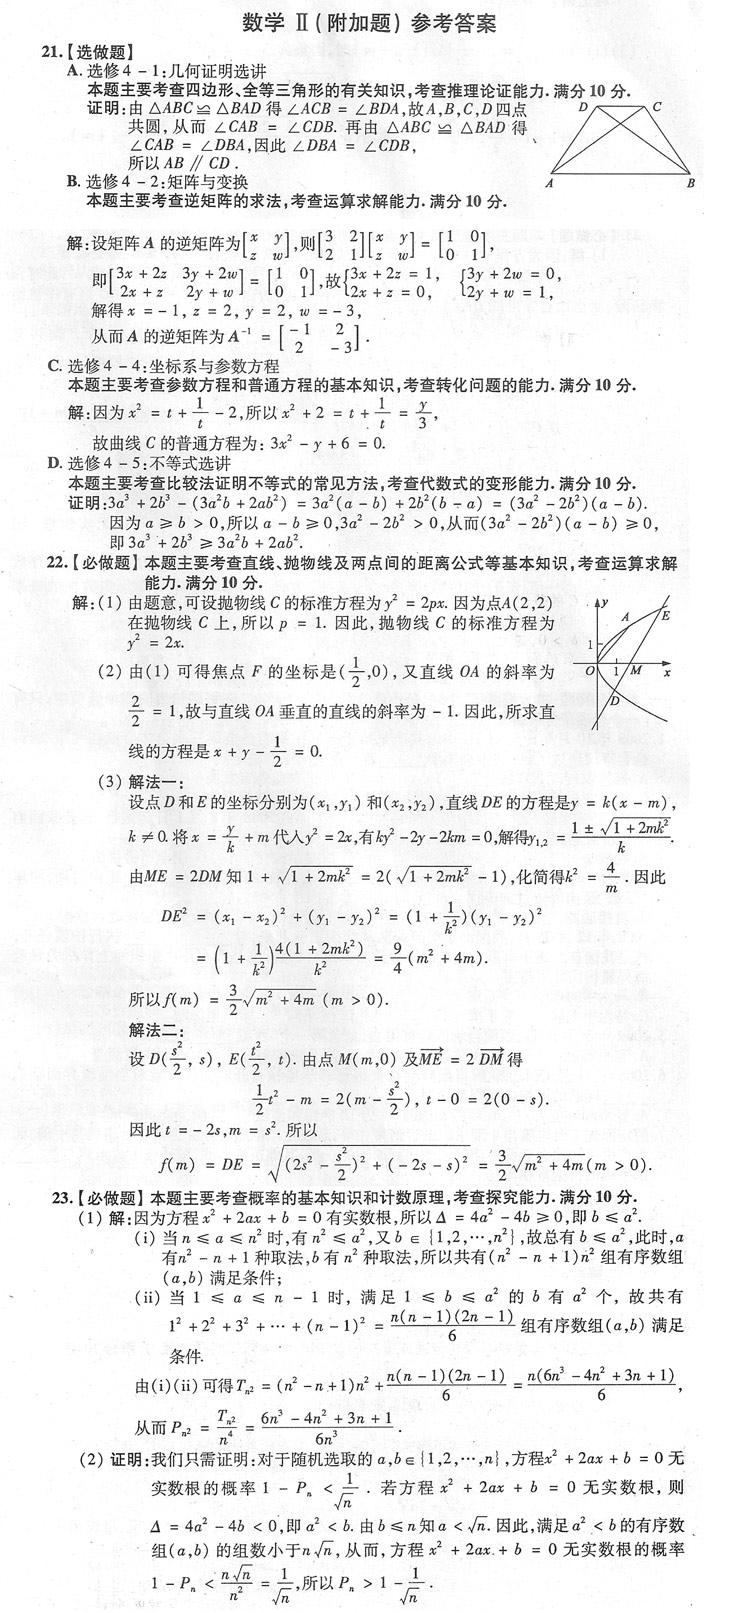 2009年高考数学真题(江苏卷)附加题答案21-23